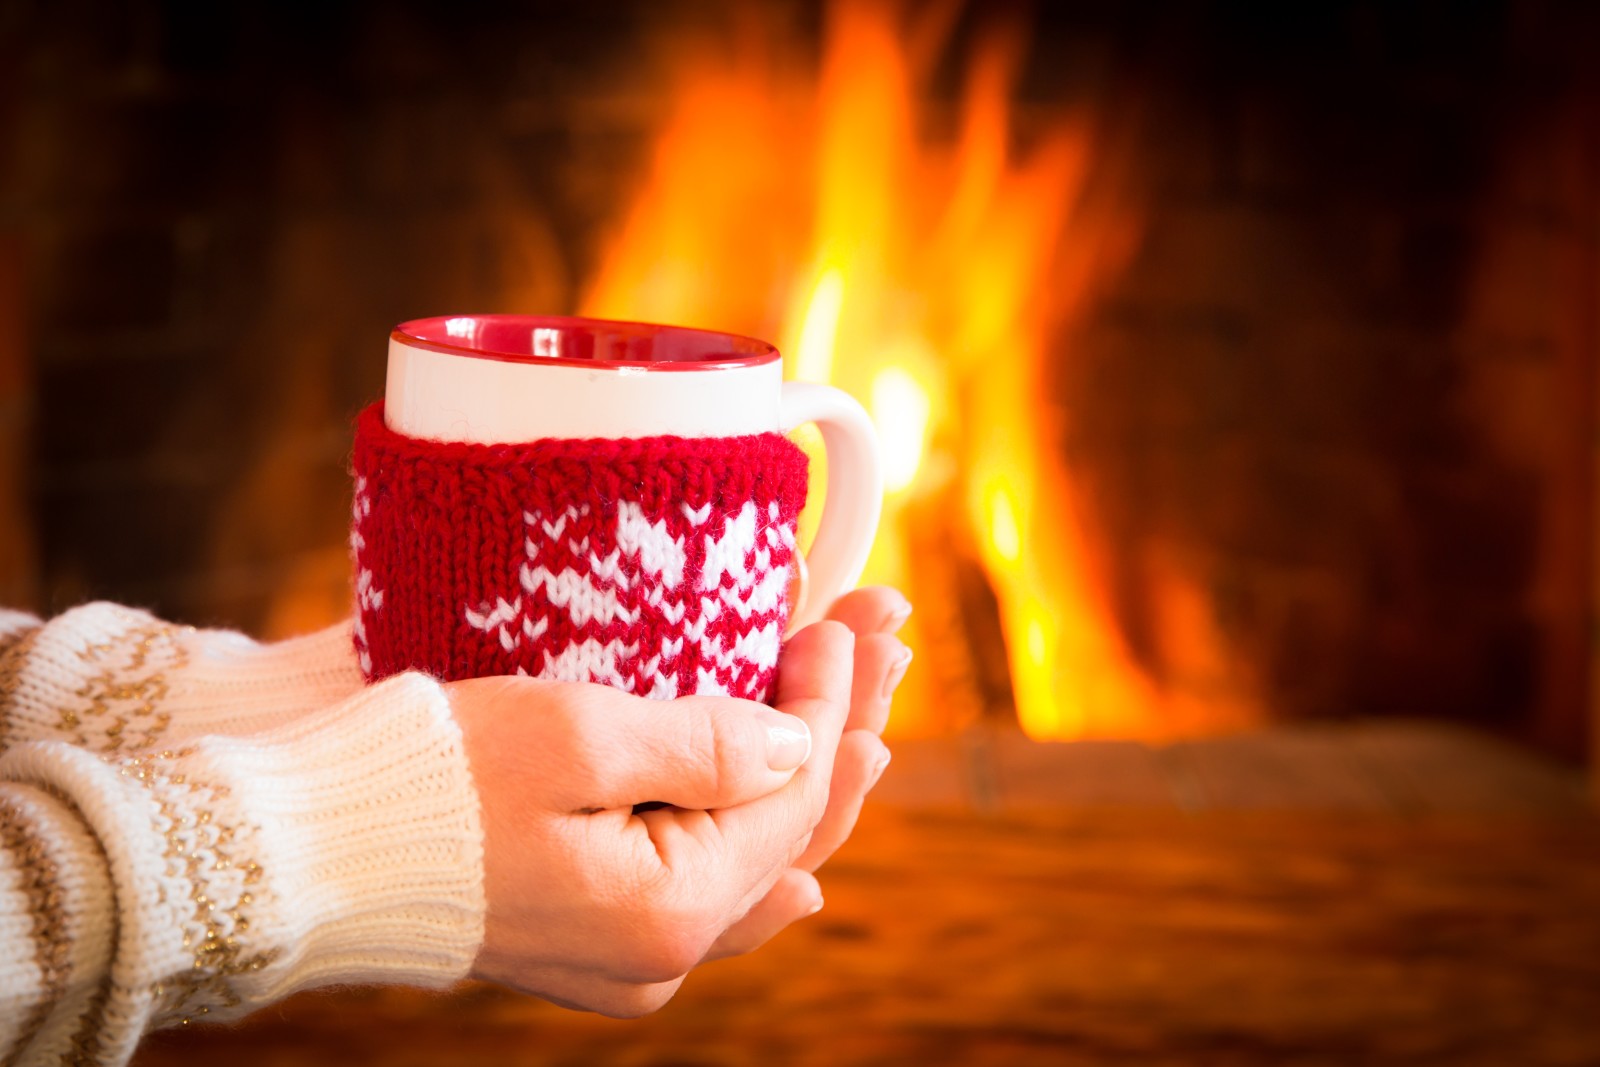 冬季, 可爱, 咖啡, 热, 火, 杯子, 壁炉, 手套